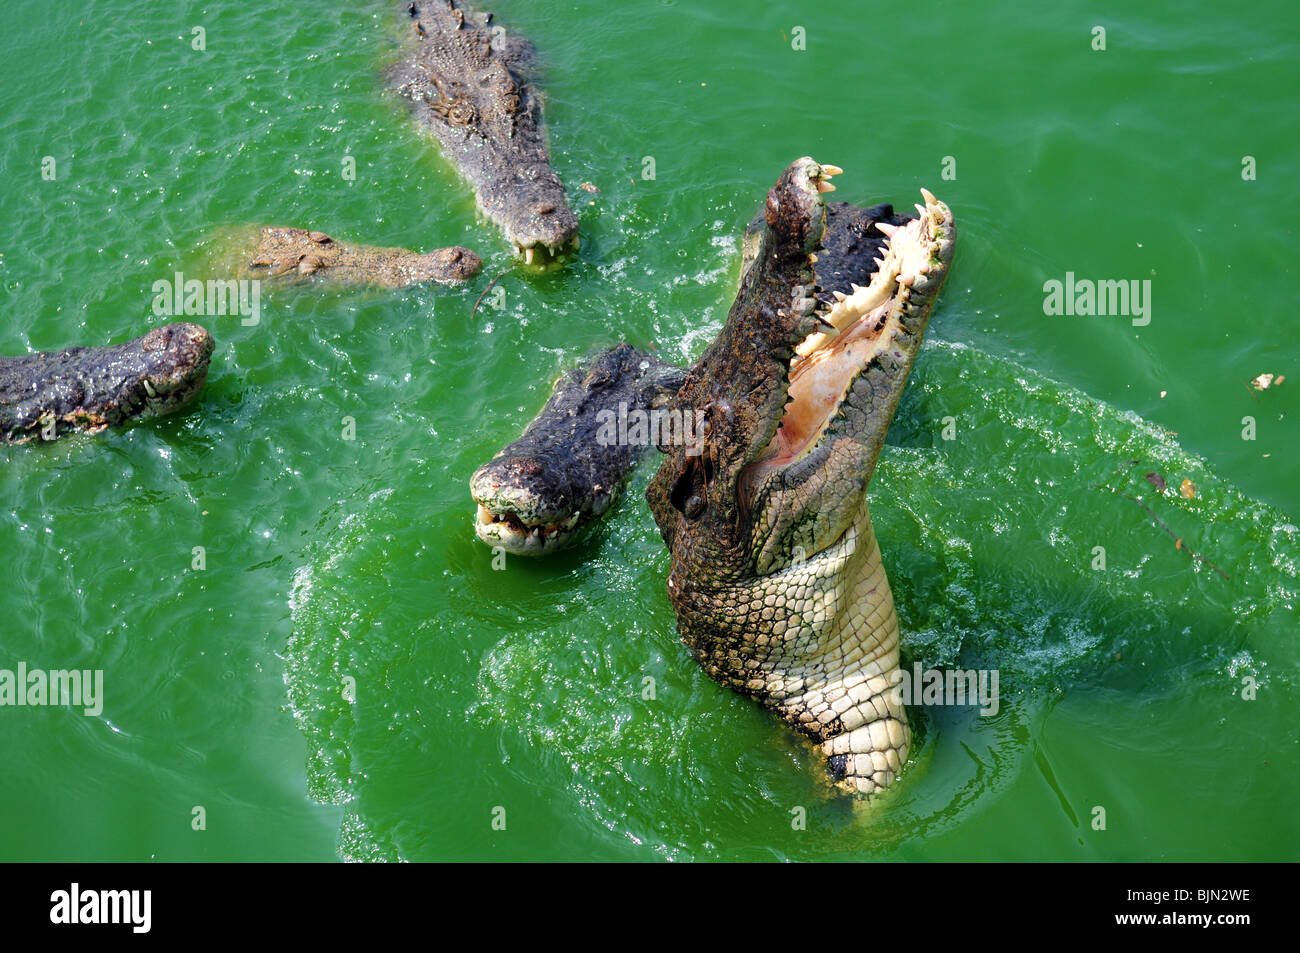 Crocodile attack immagini e fotografie stock ad alta risoluzione - Alamy